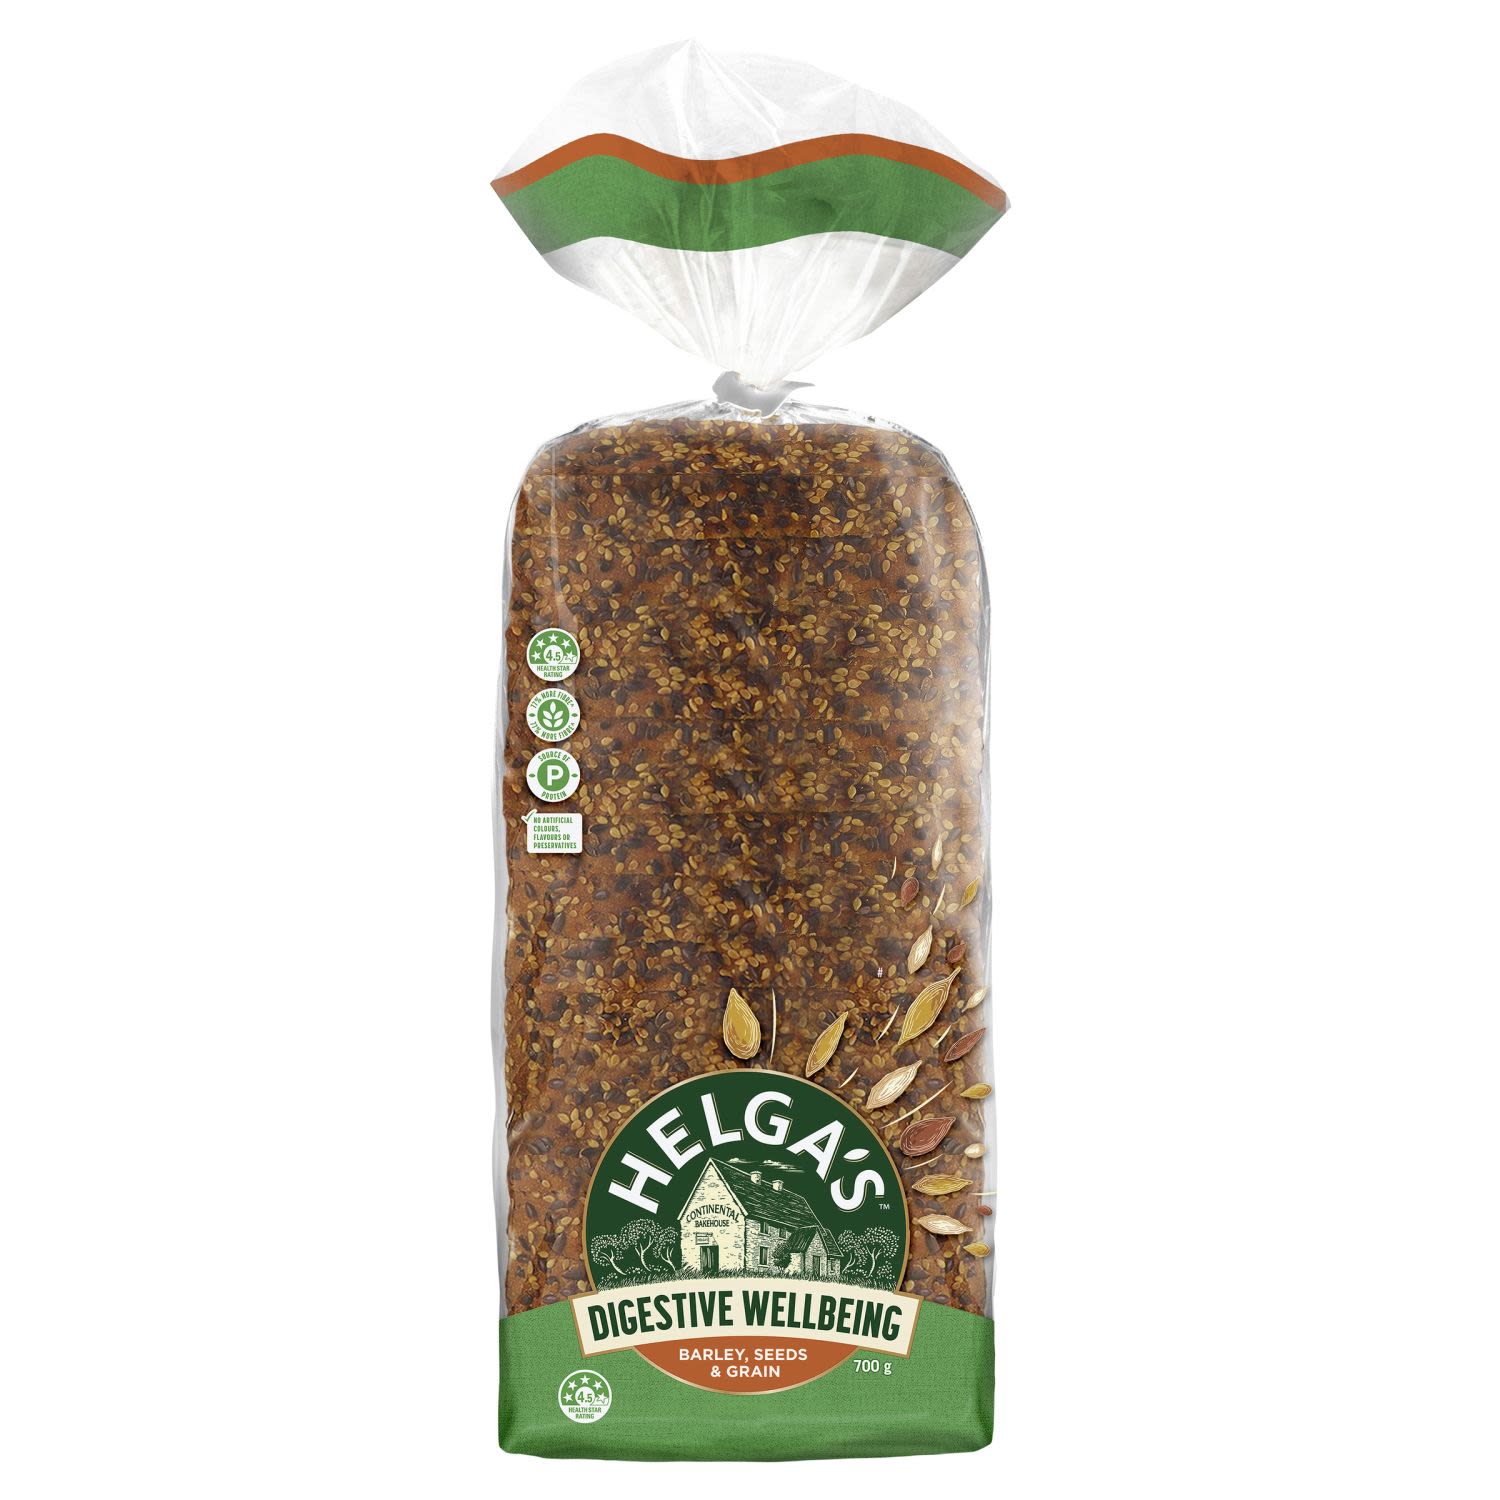 Helga's Digestive Wellbeing Barley Seeds & Grain Loaf, 700 Gram